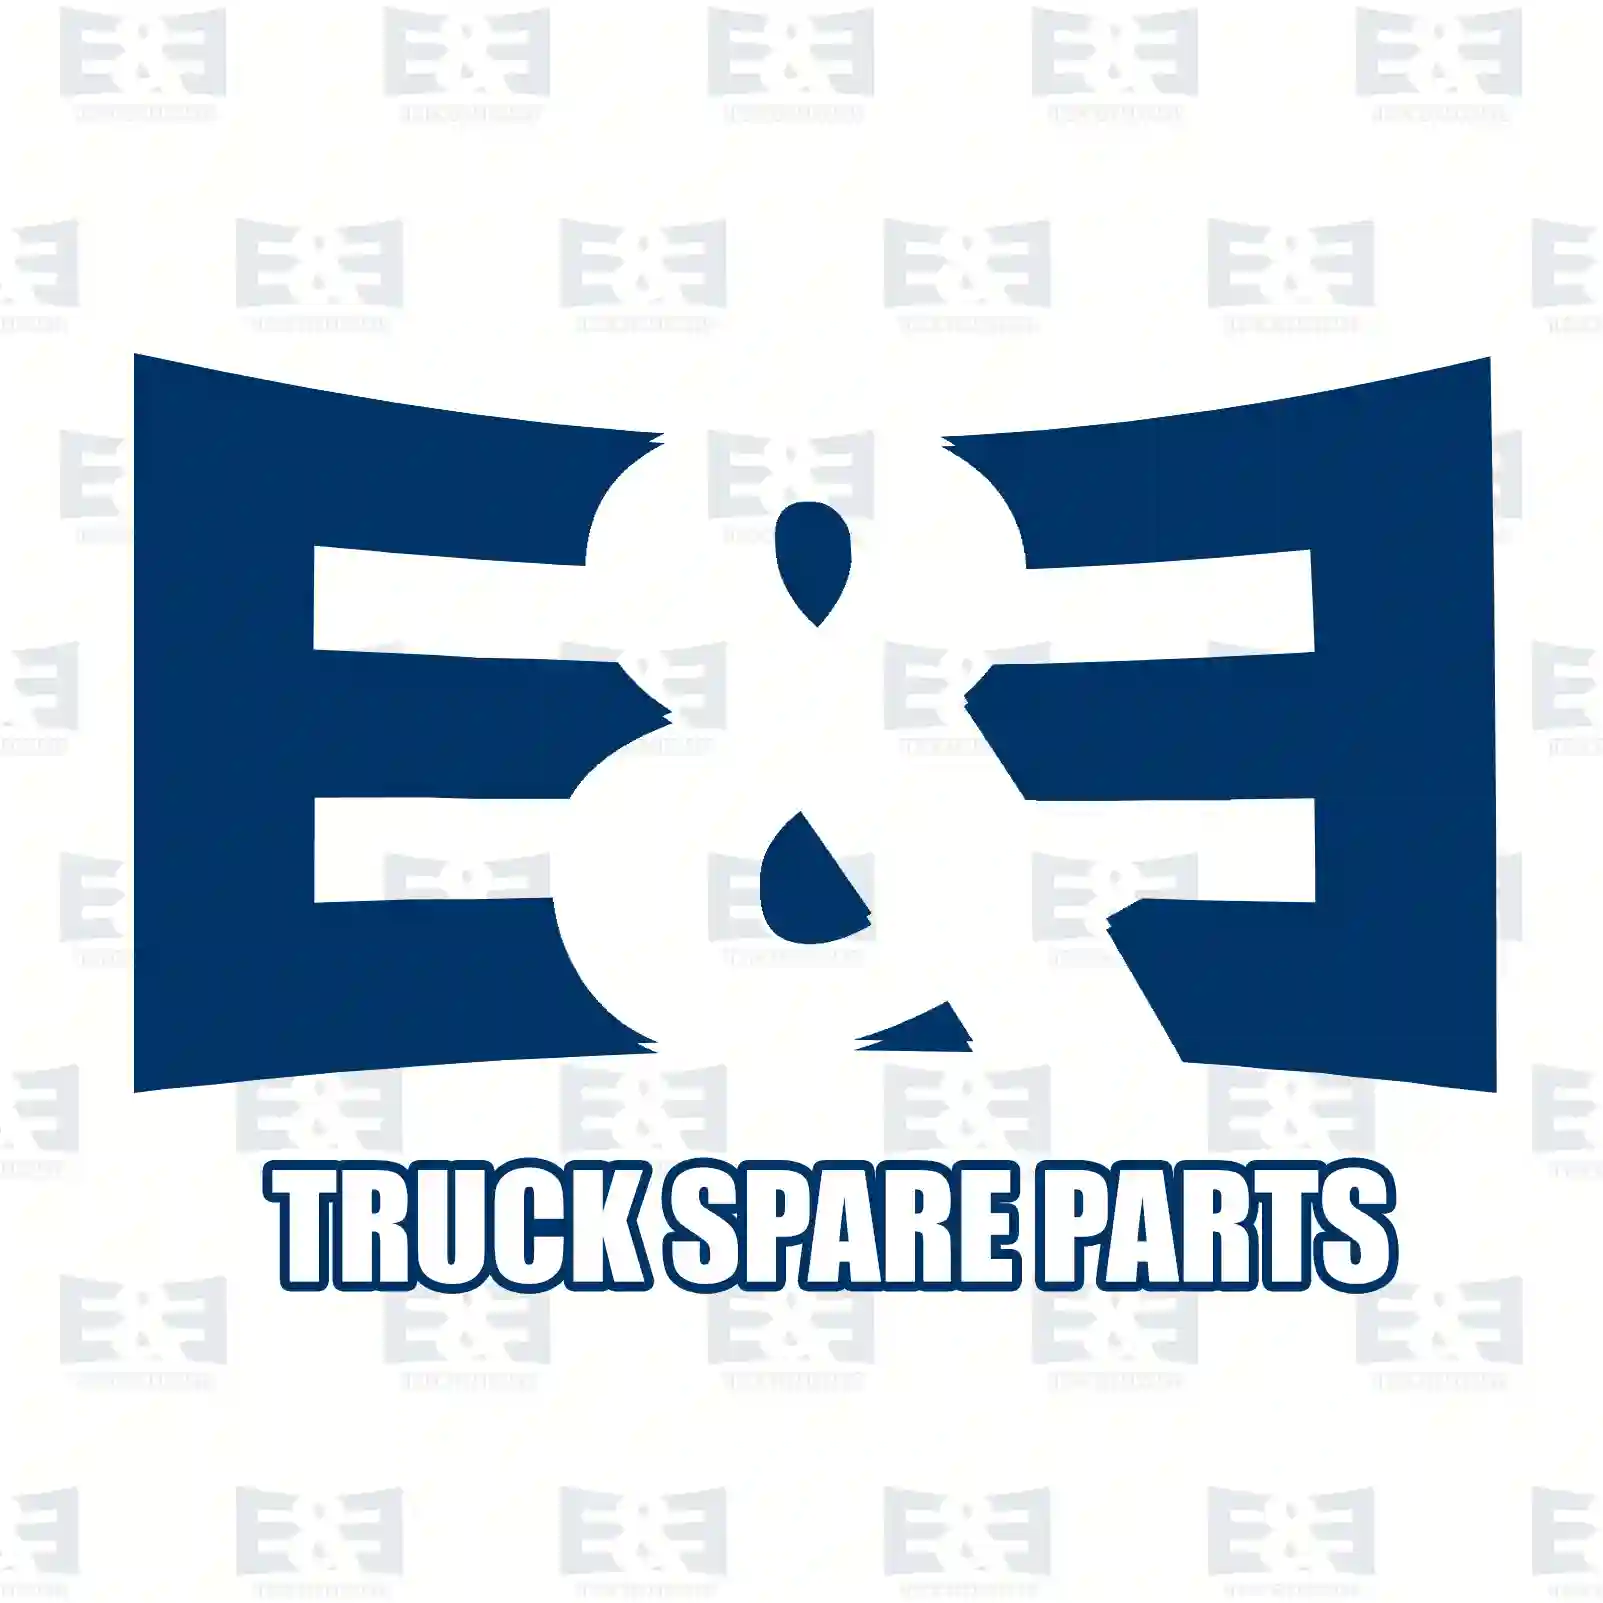 Repair kit, plug, 2E2298818, 1829109S, 0025403481, 7703297277S3, 1355826S, 979040S2, ZG40079-0008 ||  2E2298818 E&E Truck Spare Parts | Truck Spare Parts, Auotomotive Spare Parts Repair kit, plug, 2E2298818, 1829109S, 0025403481, 7703297277S3, 1355826S, 979040S2, ZG40079-0008 ||  2E2298818 E&E Truck Spare Parts | Truck Spare Parts, Auotomotive Spare Parts